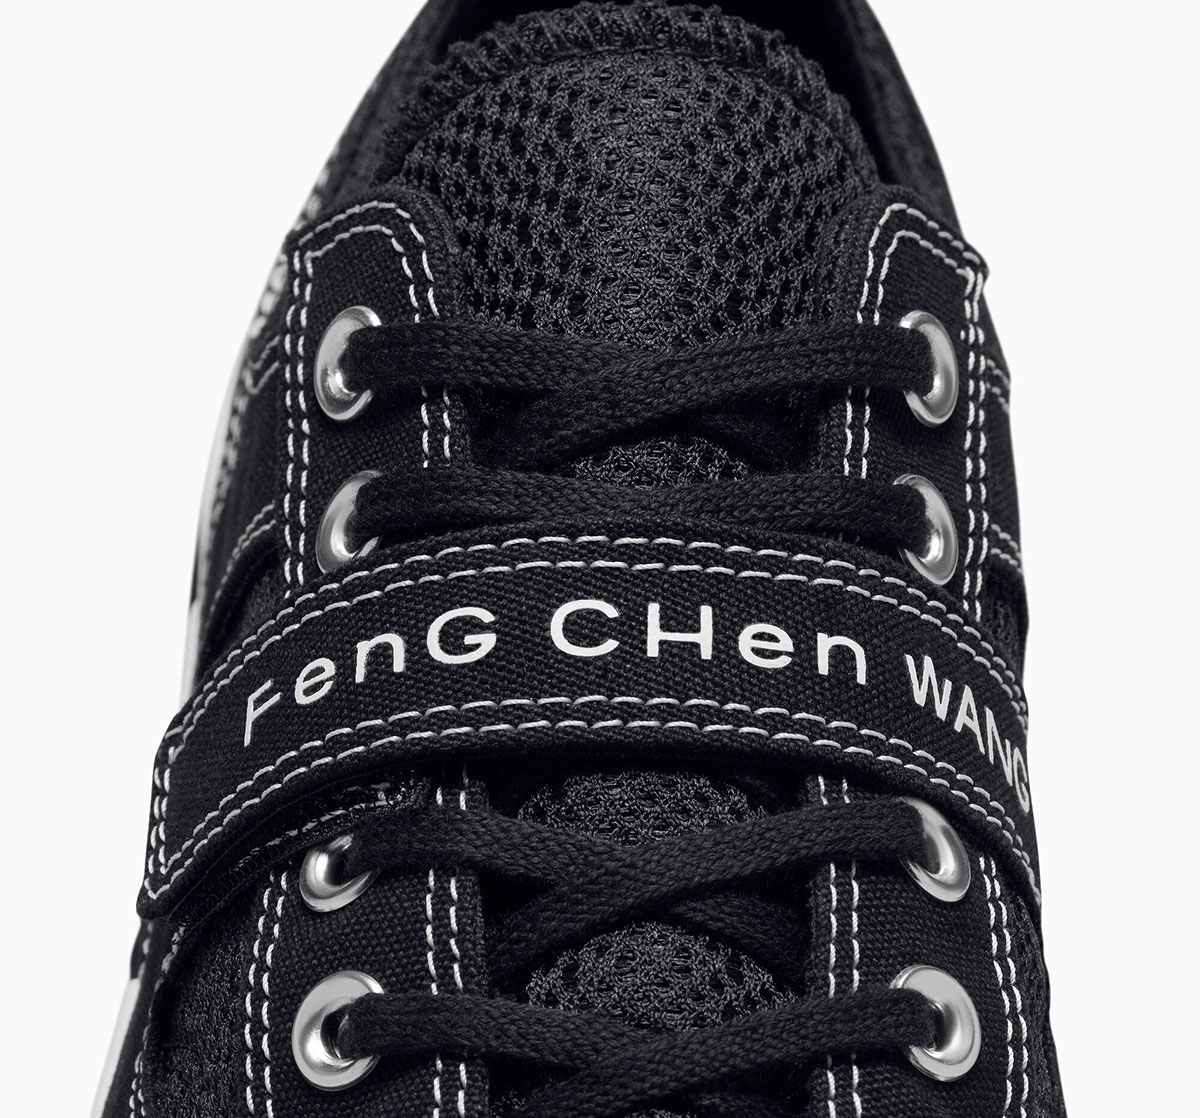 Feng Chen Wang Converse Chuck 70 A08858c 7